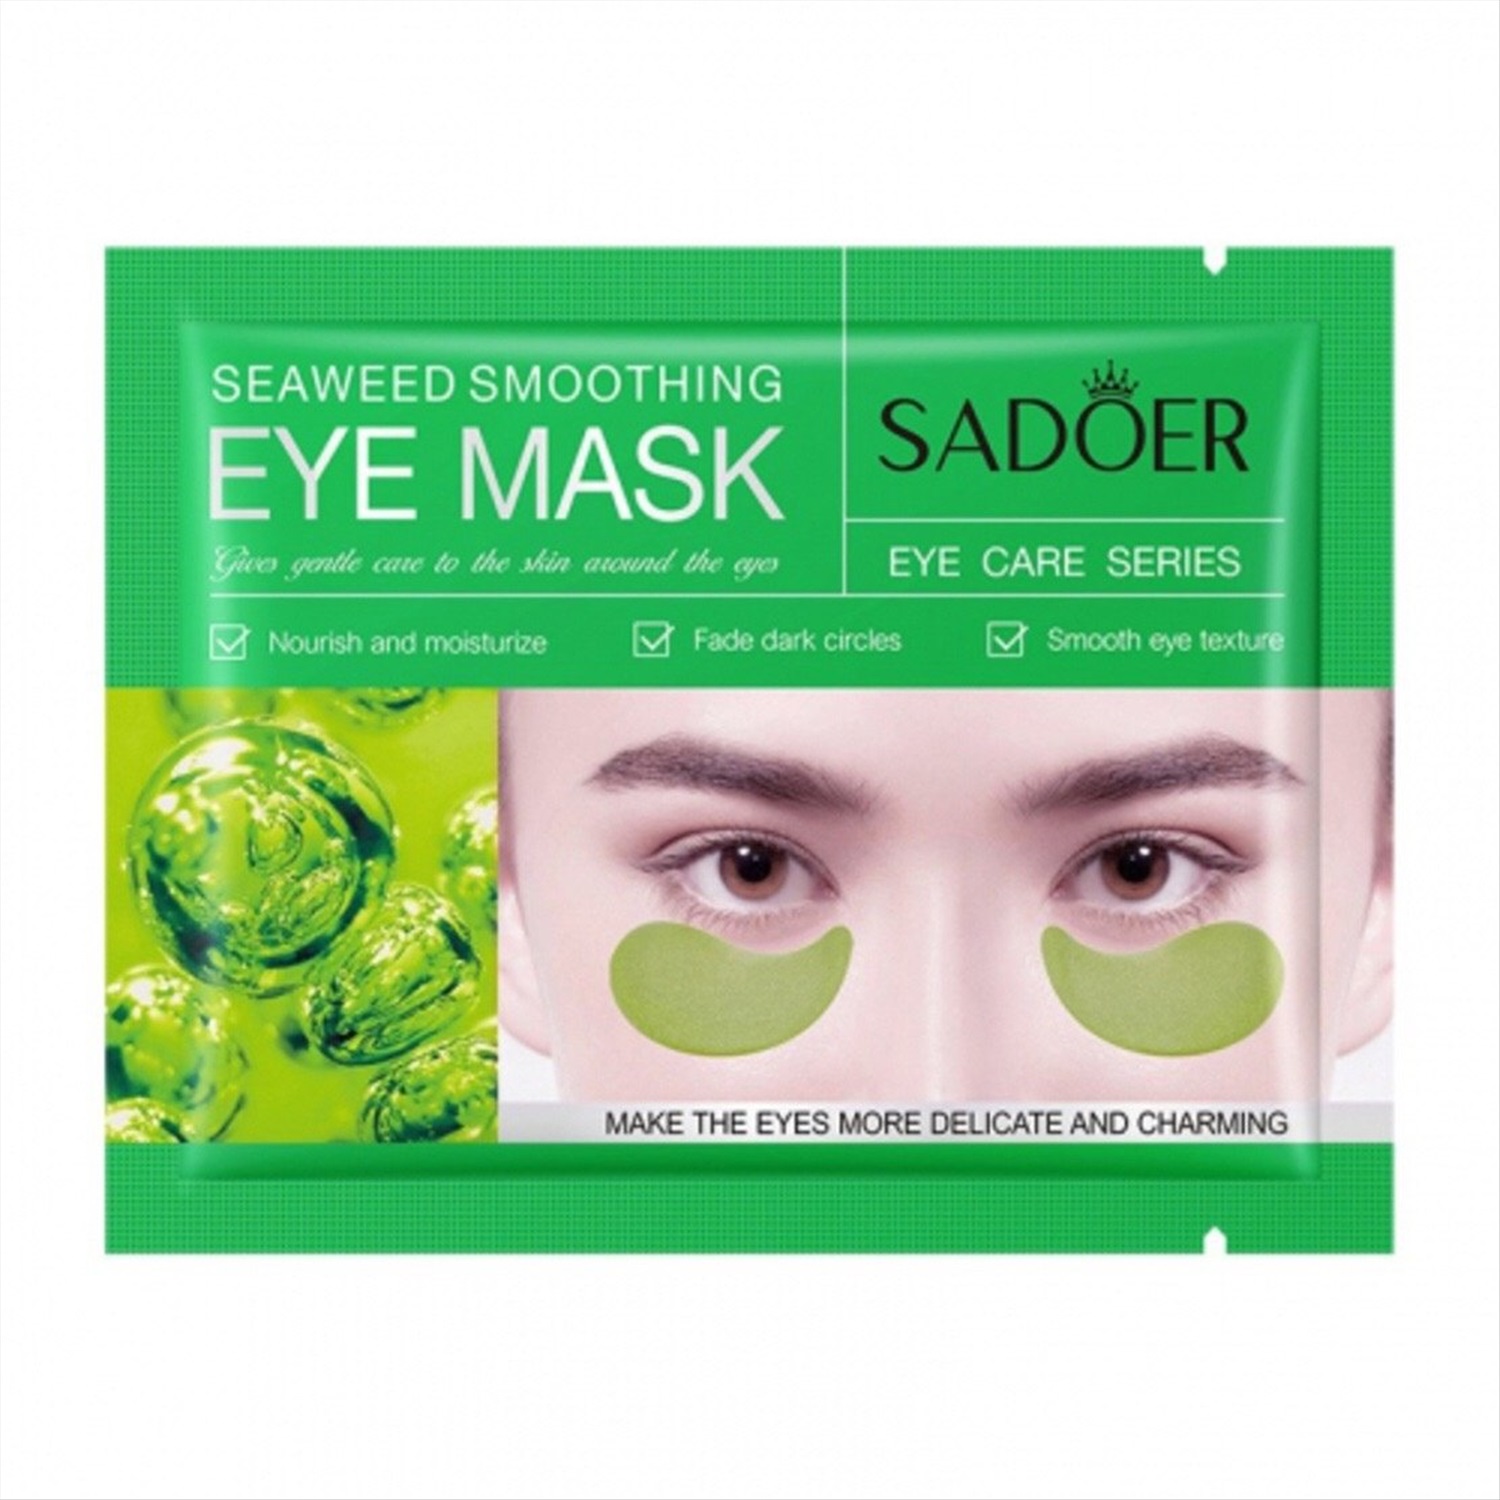 Маска sadoer применение. Патчи для глаз sadoer Eye Mask. Delicate Moisturizing Eye Mask sadoer. Sadoer для кожи вокруг глаз. Sadoer маска для лица.